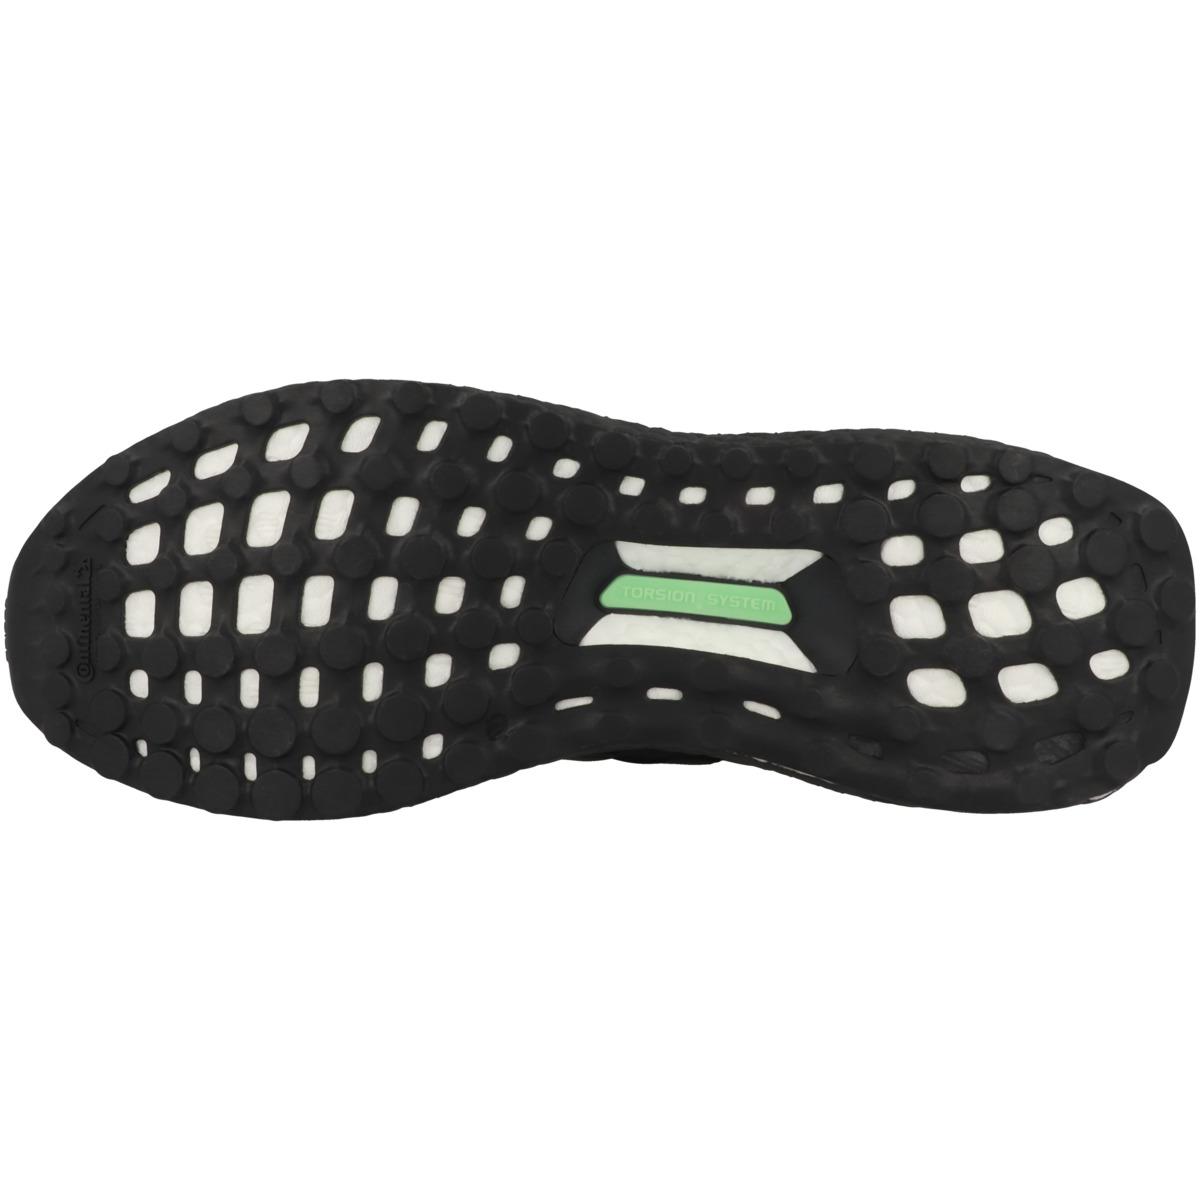 Adidas Ultraboost 1.0 Laufschuhe schwarz